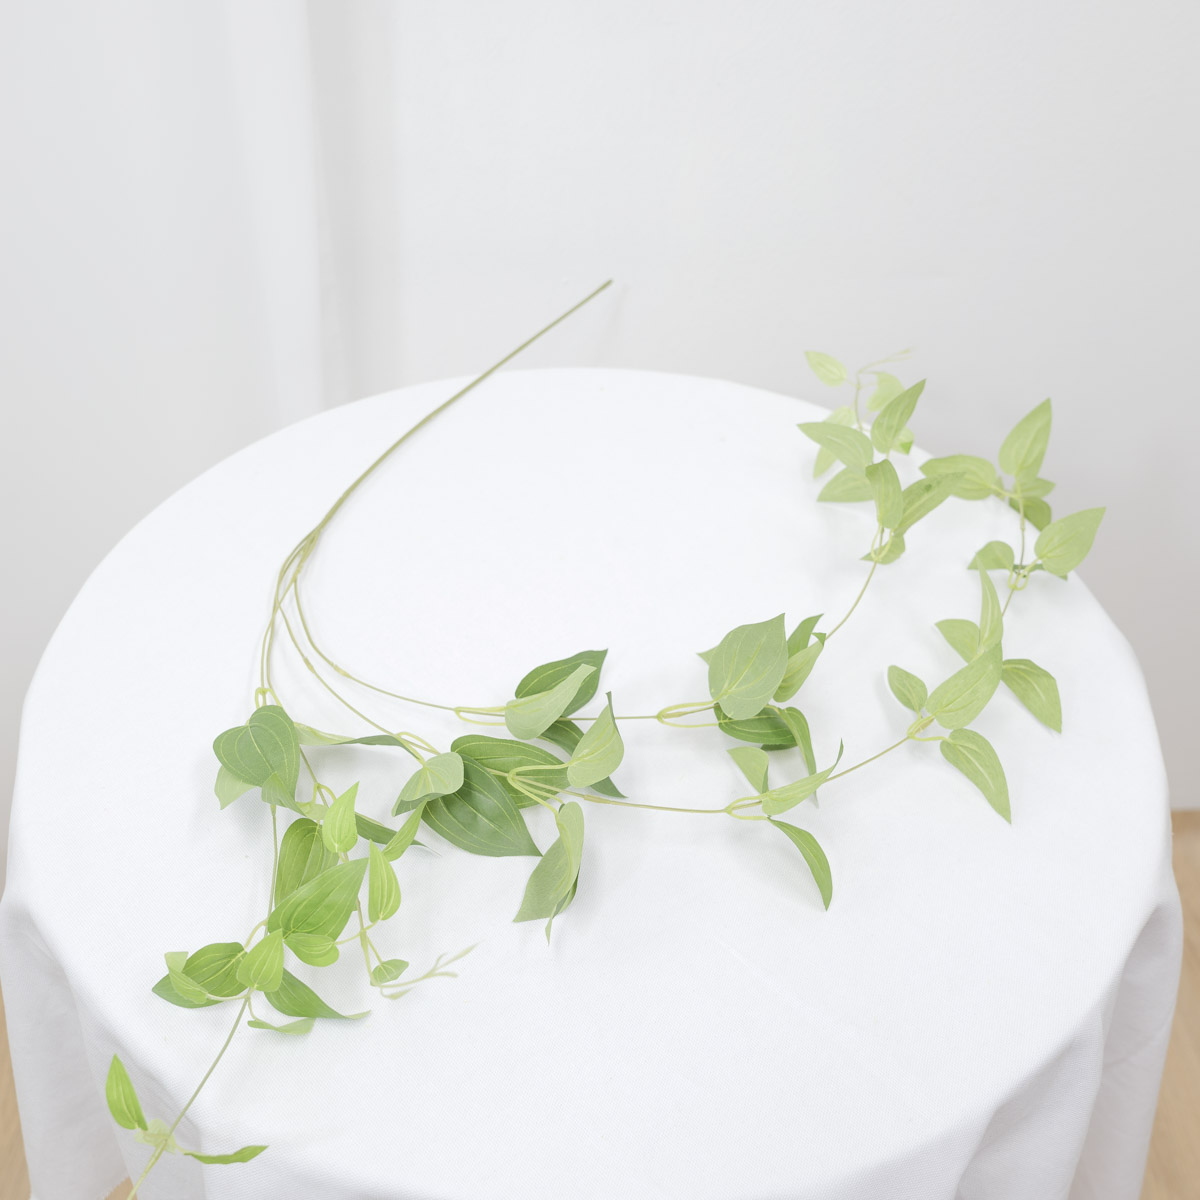 실크플라워 클레마티스조화 잎사귀 넝쿨조화 130cm 테이블에 올려놓은 사진